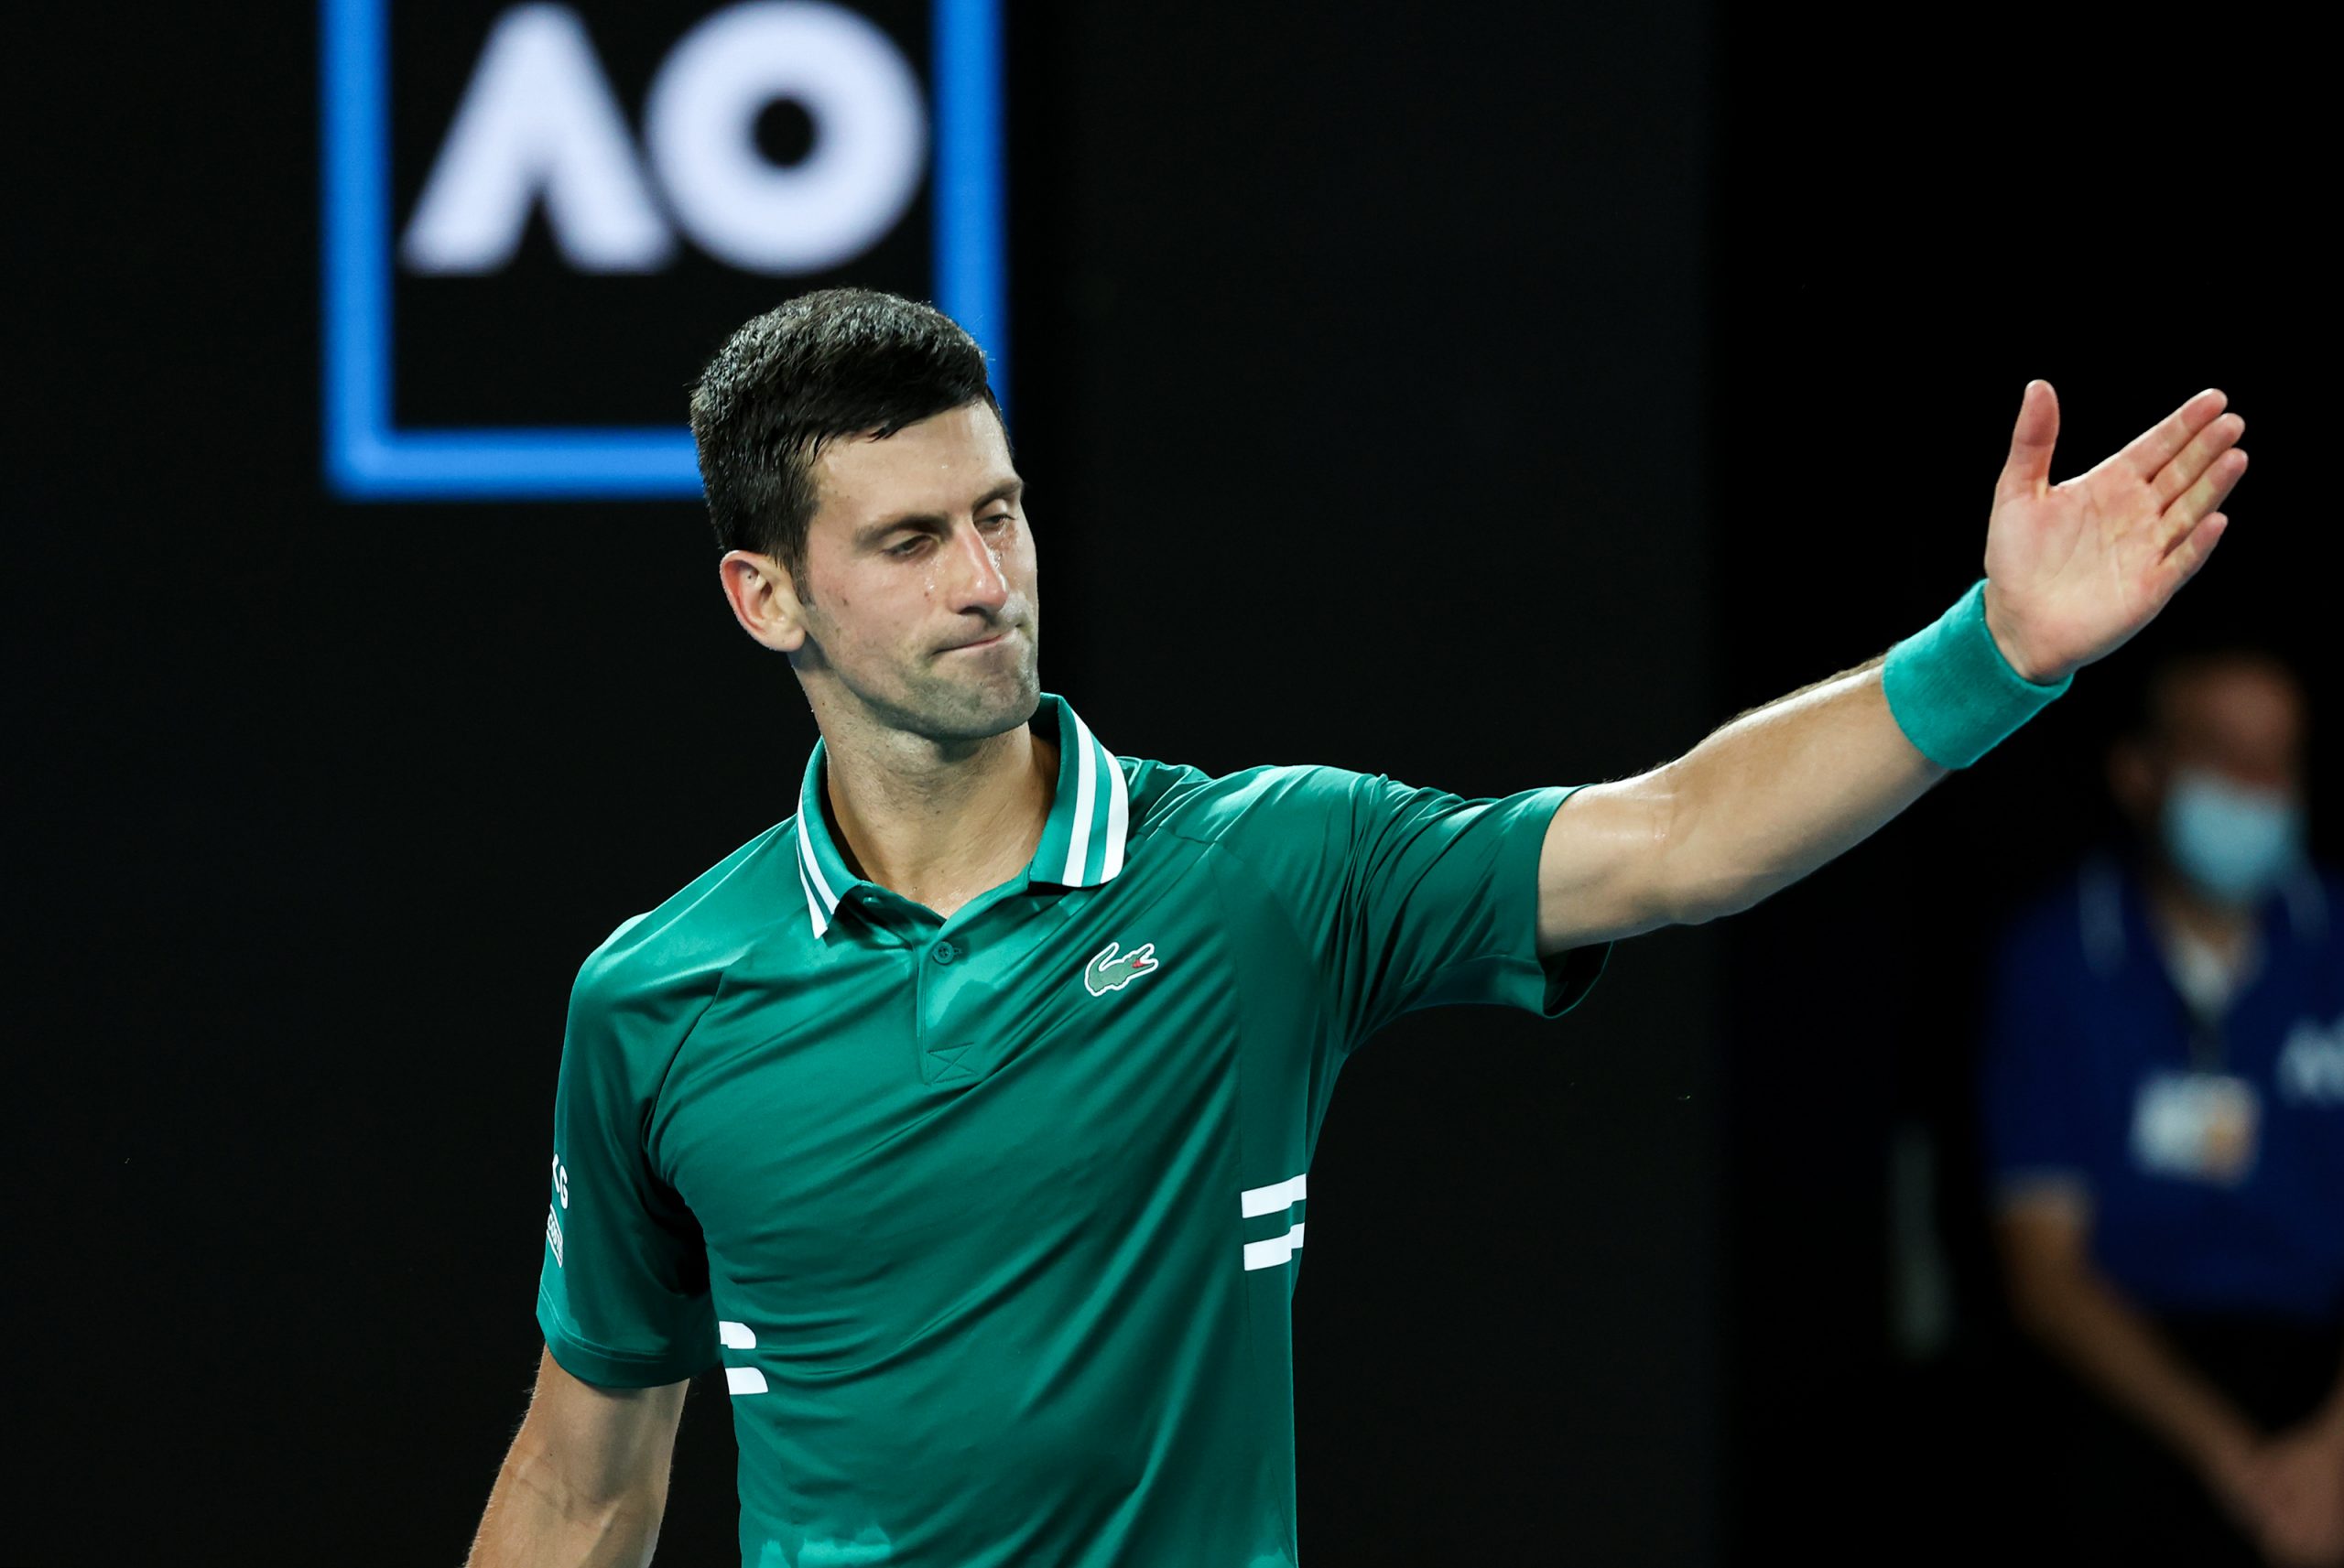 Francia rectifica y no permitirá que Djokovic participe en Roland Garros